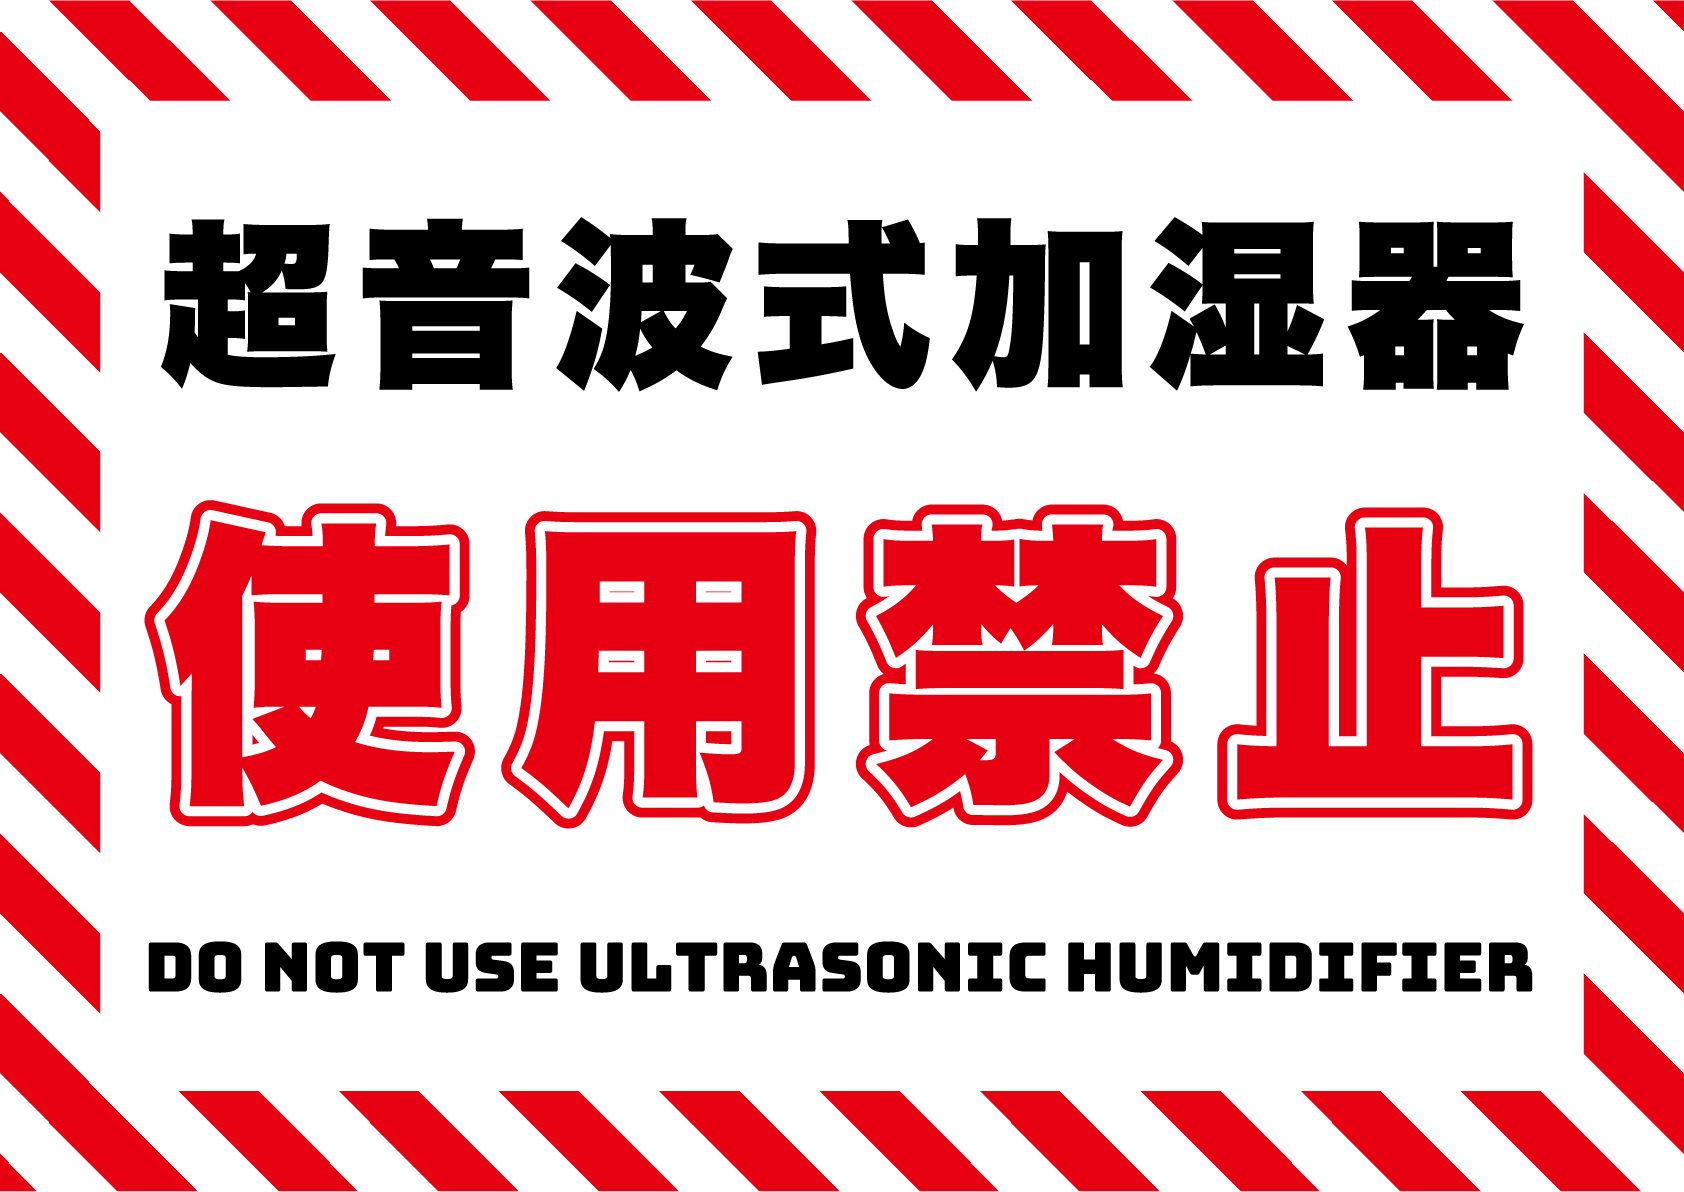 超音波式加湿器は使用禁止の張り紙